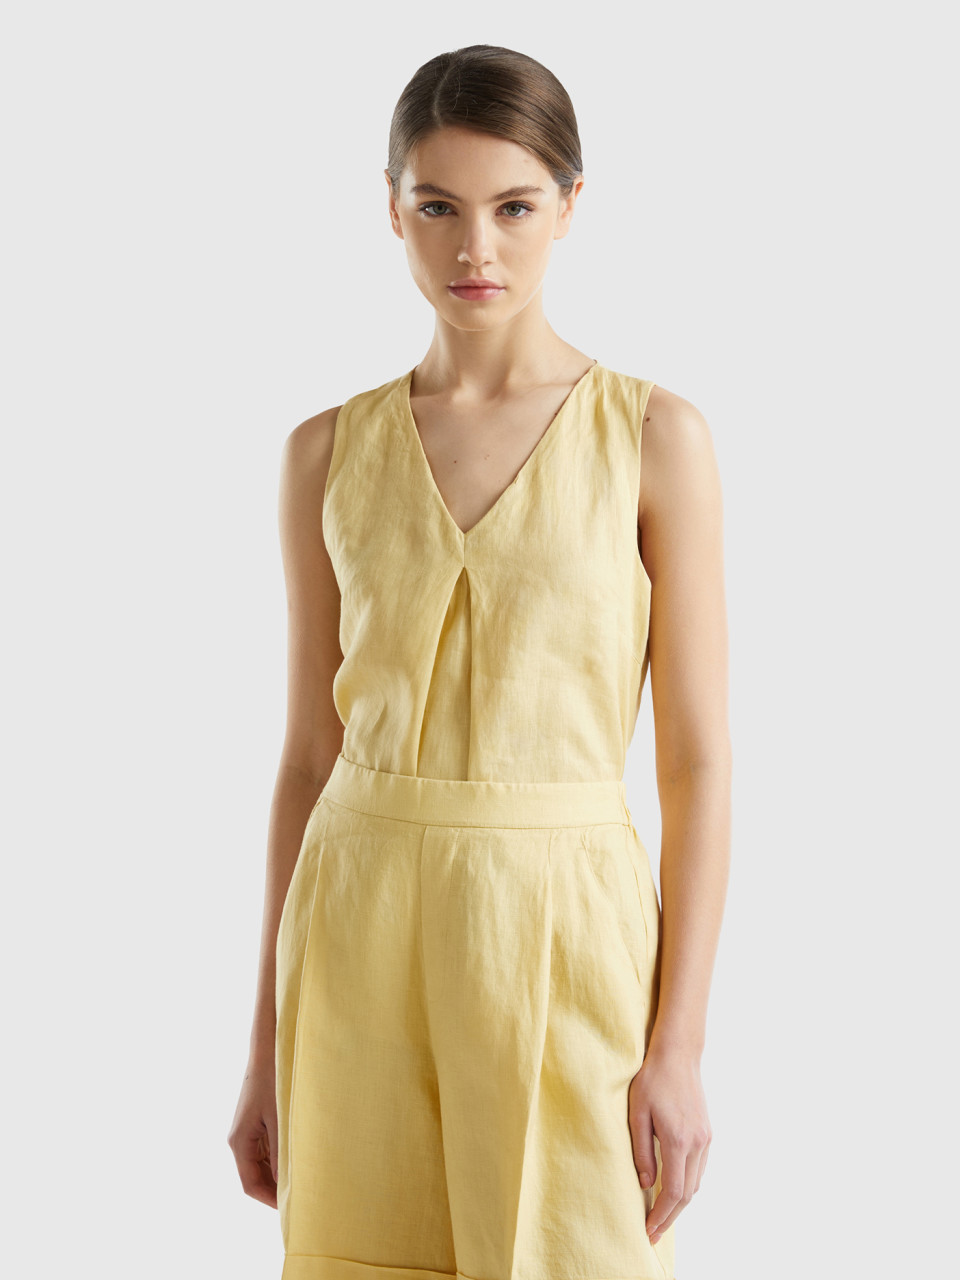 Benetton, Sleeveless Blouse In Pure Linen, Yellow, Women